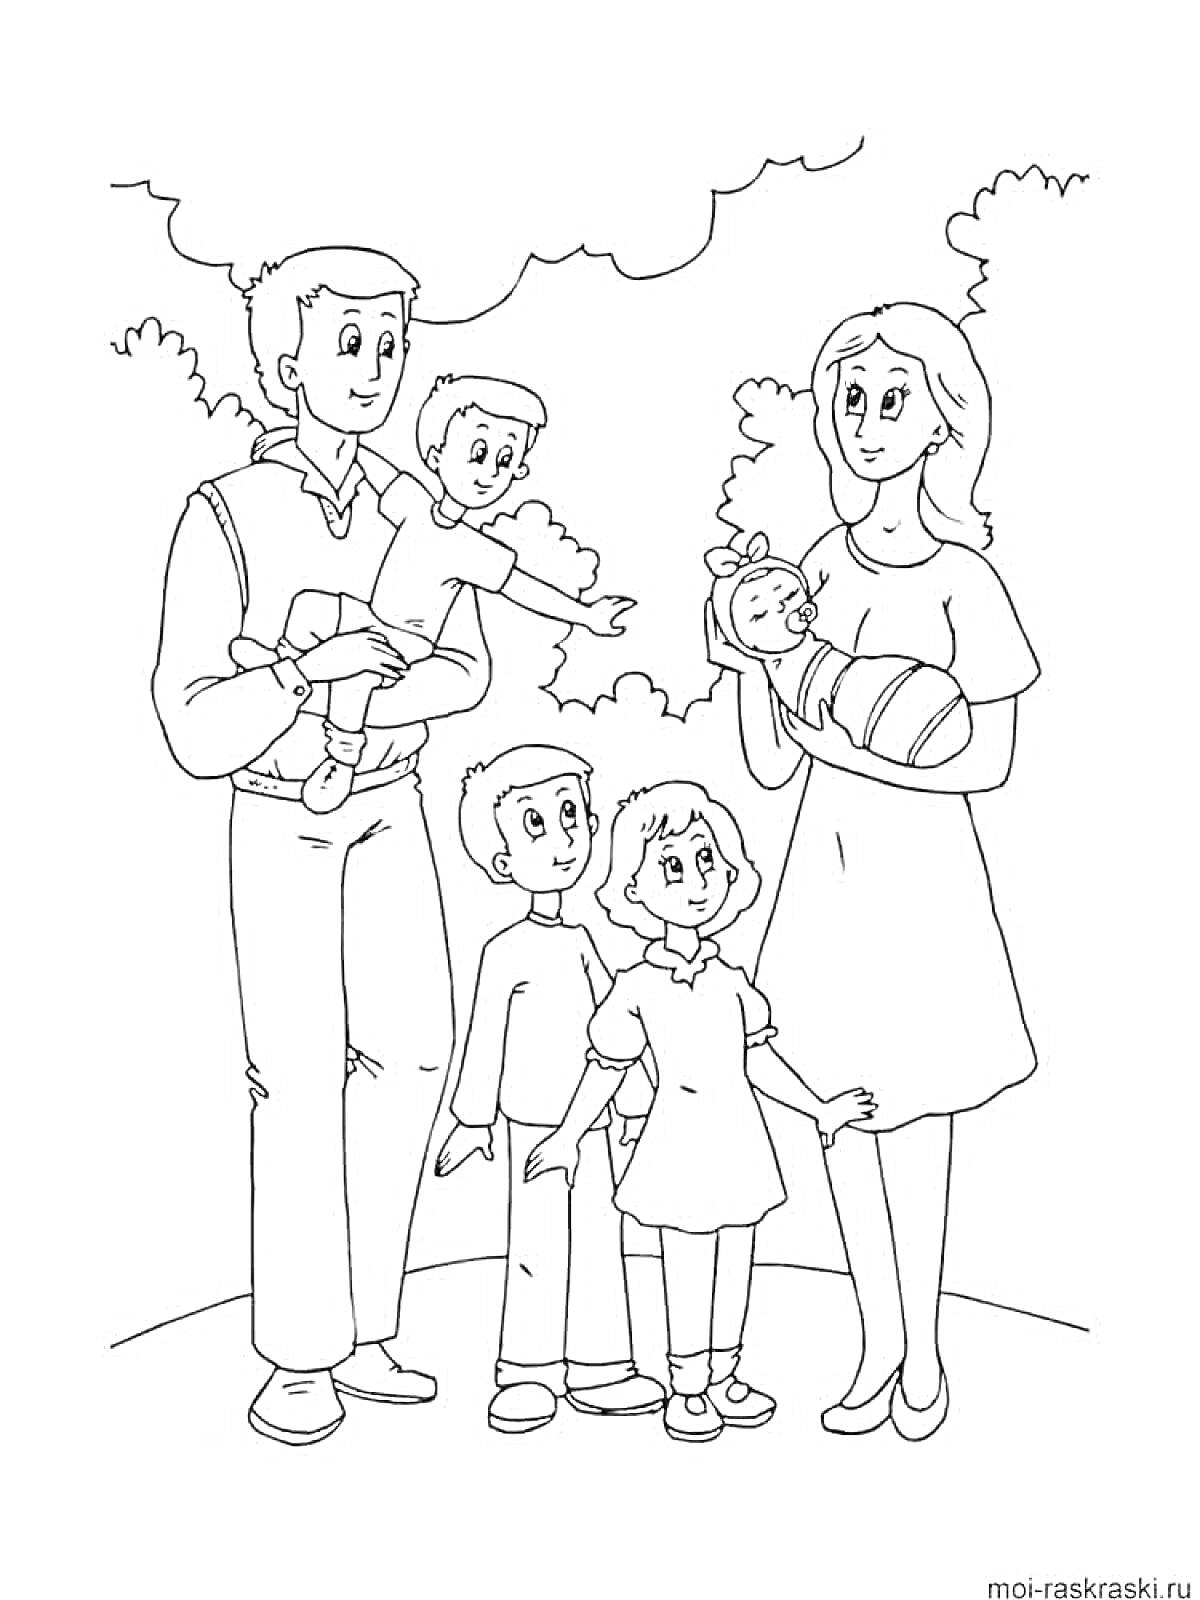 Раскраска Семья с родителями и четырьмя детьми на прогулке